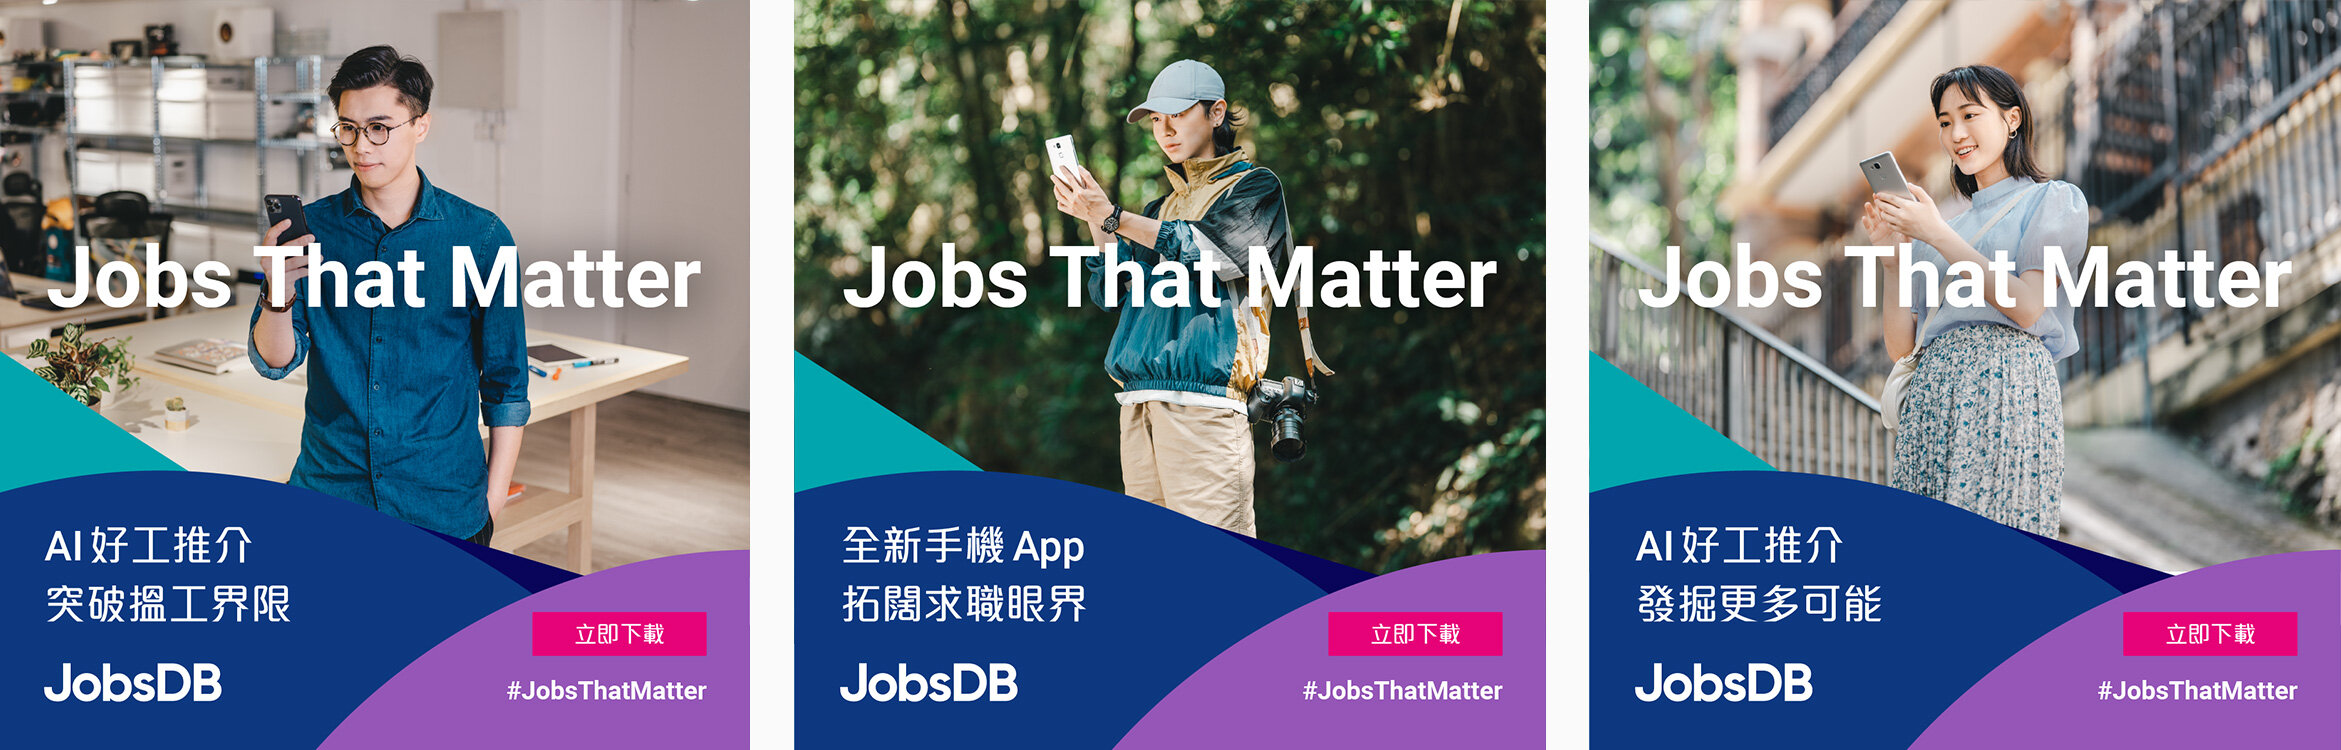 jobsDB_ad-2.jpg